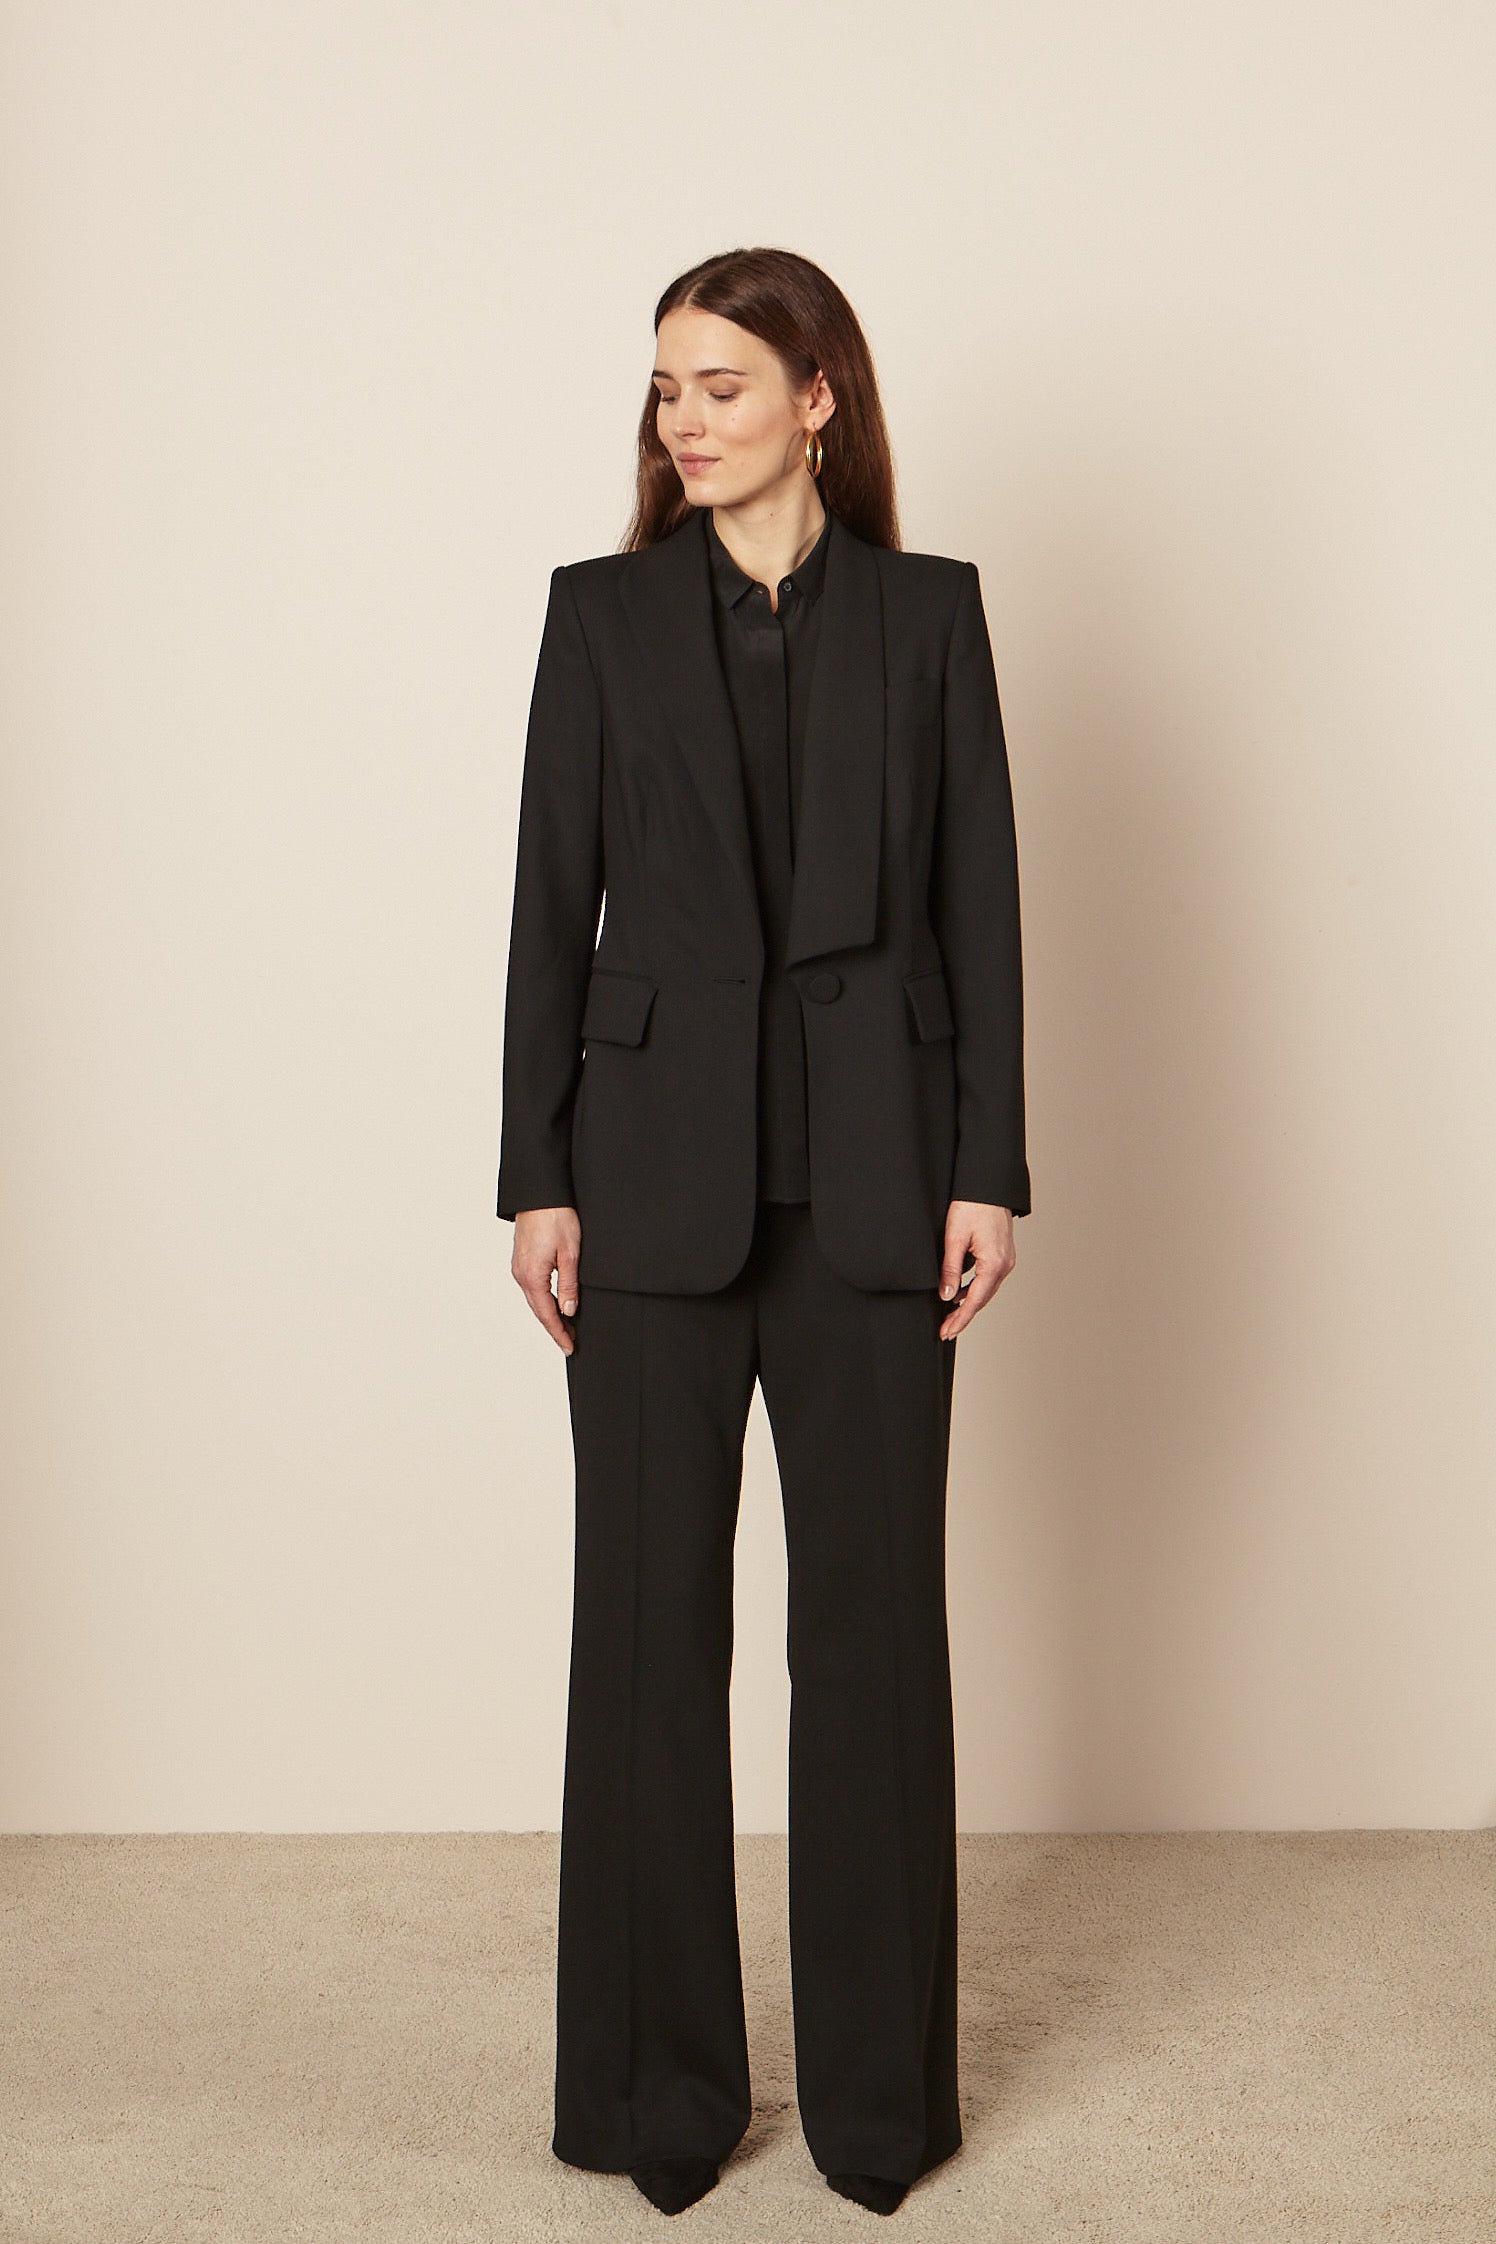 Damen-Anzug aus reiner nachhaltiger Wolle in Schwarz